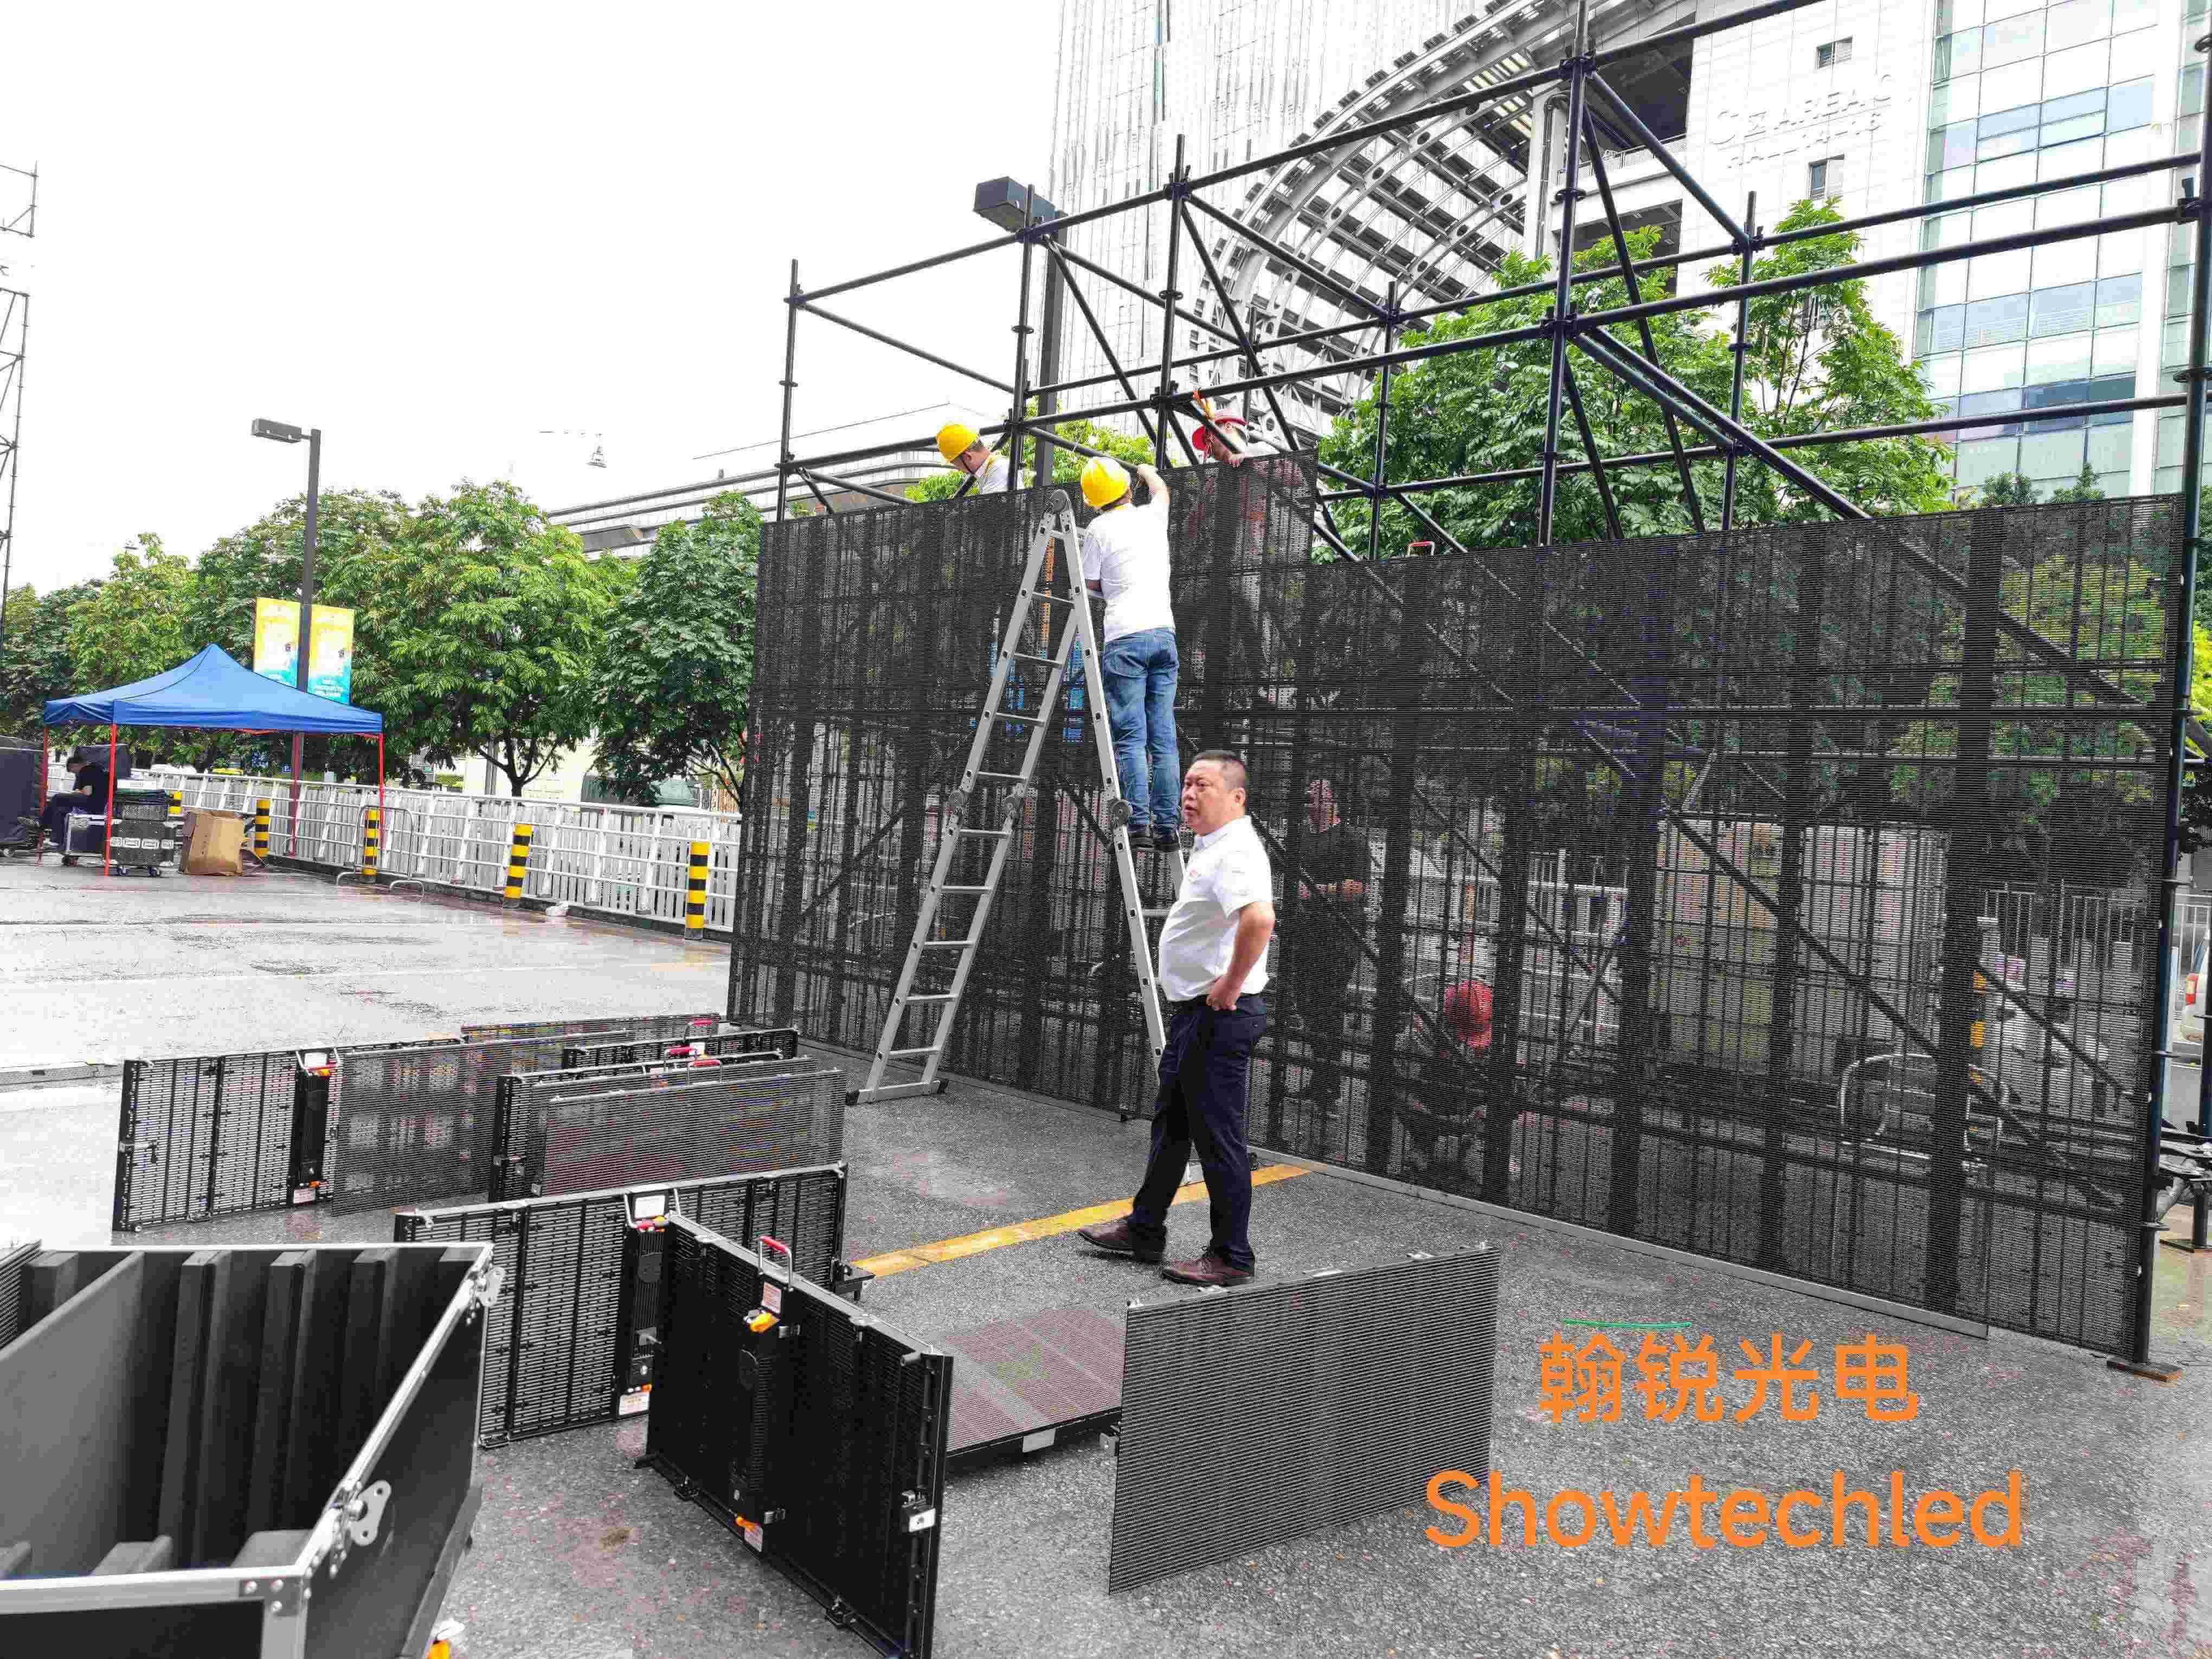 Pantalla LED transparente al aire libre para competición PK, serie de líneas al aire libre de Guangzhou GETshow, apantallada para exteriores (P3.91-7.81 de pantalla de hielo)